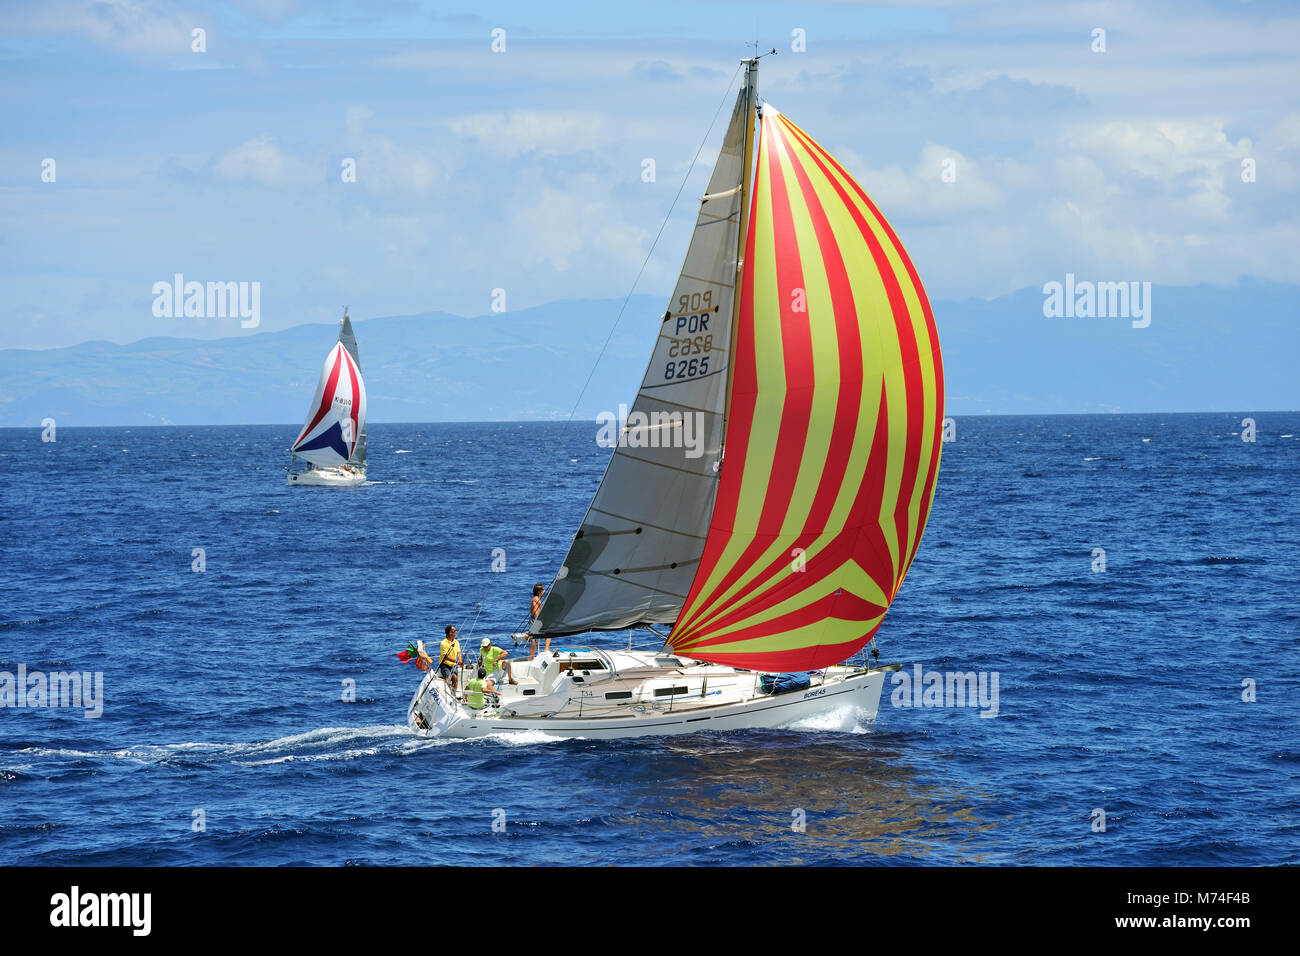 Regatten im Meer Kanal zwischen Faial und Pico Inseln im Meer Woche Festival. Faial, Azoren, Portugal Stockfoto